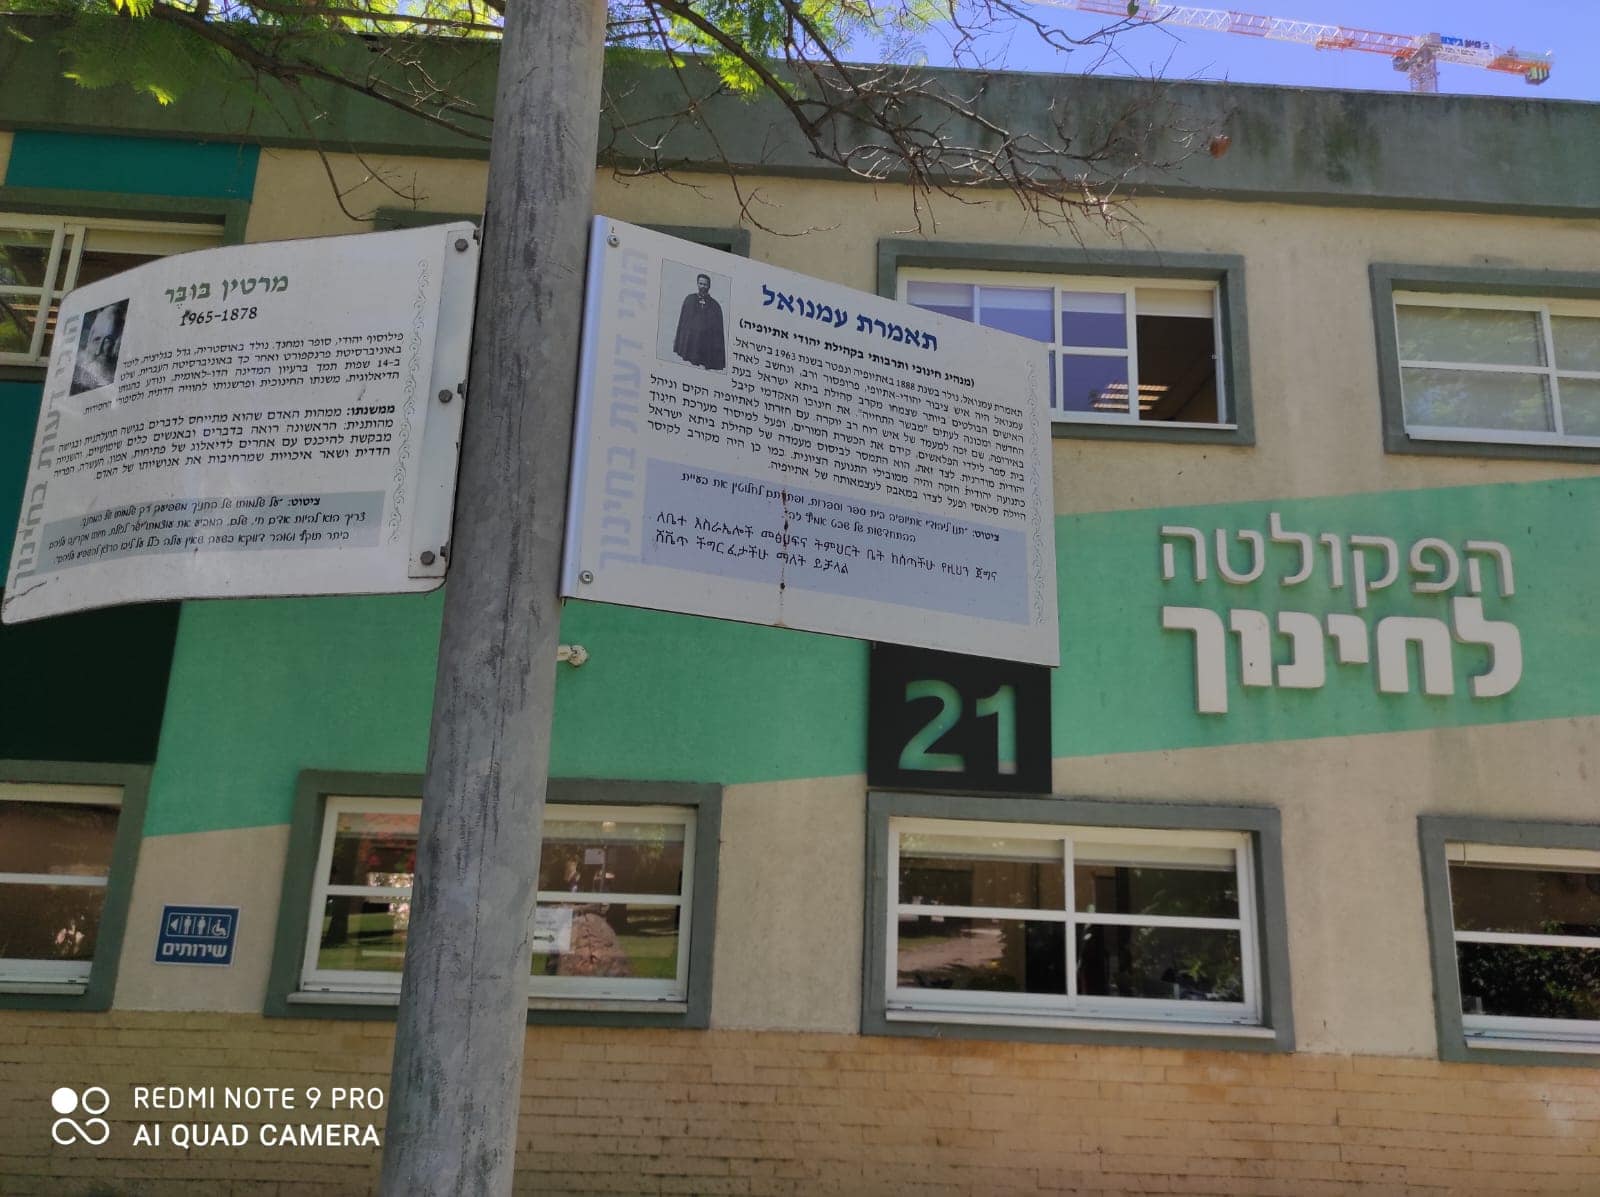 שילוט עם שמות של גיבורים יהודים מאתיופיה בקמפוס סמינר הקיבוצים (צילום: באדיבות פורום ירוסלם)